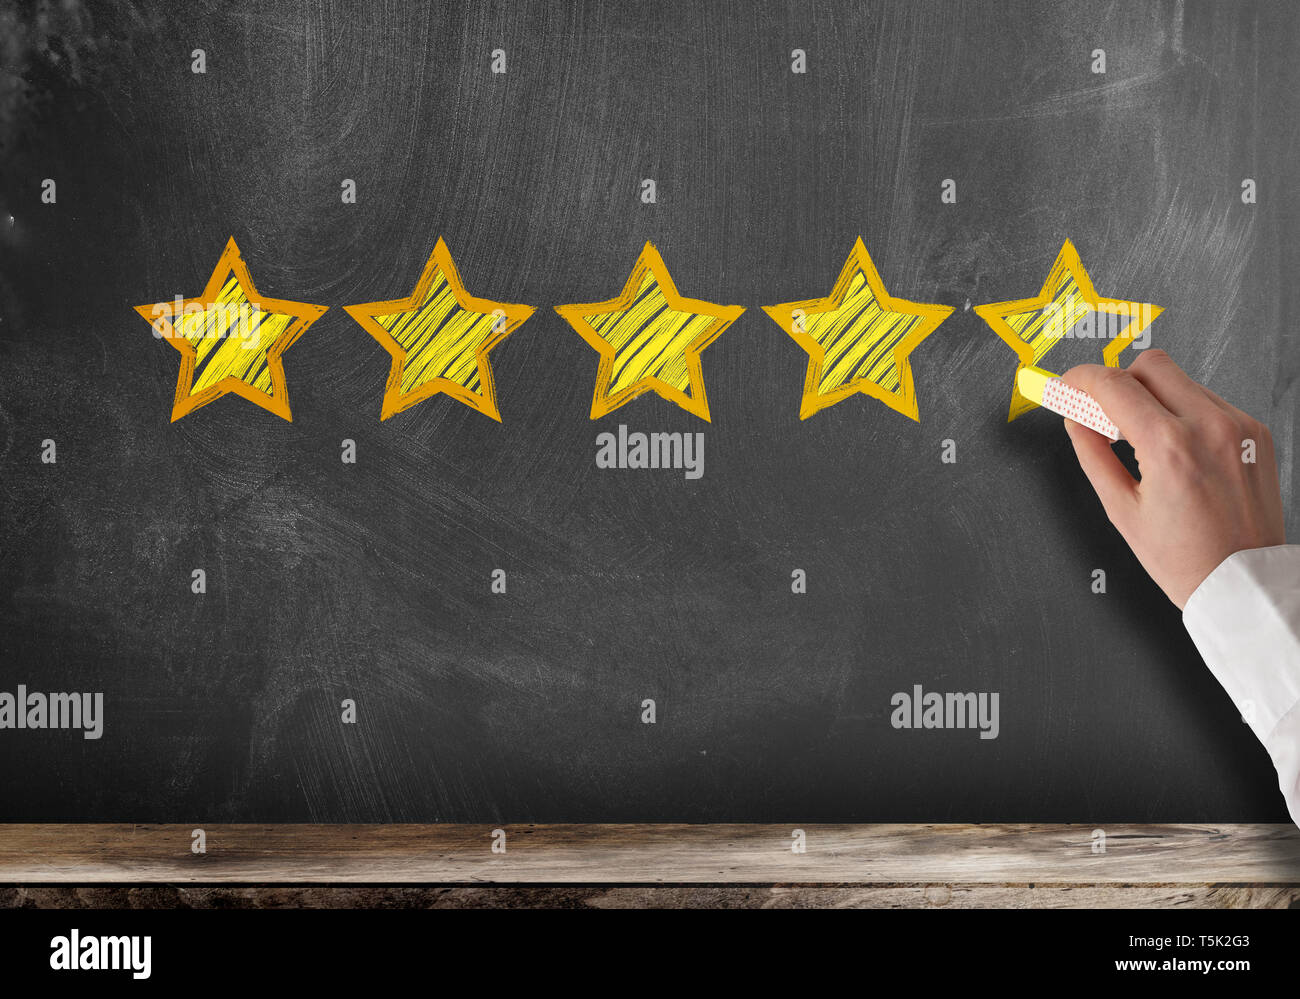 Ausgezeichnetes 5-Sterne-Hotel Kunden Feedback oder Client service Rating auf der Tafel Stockfoto